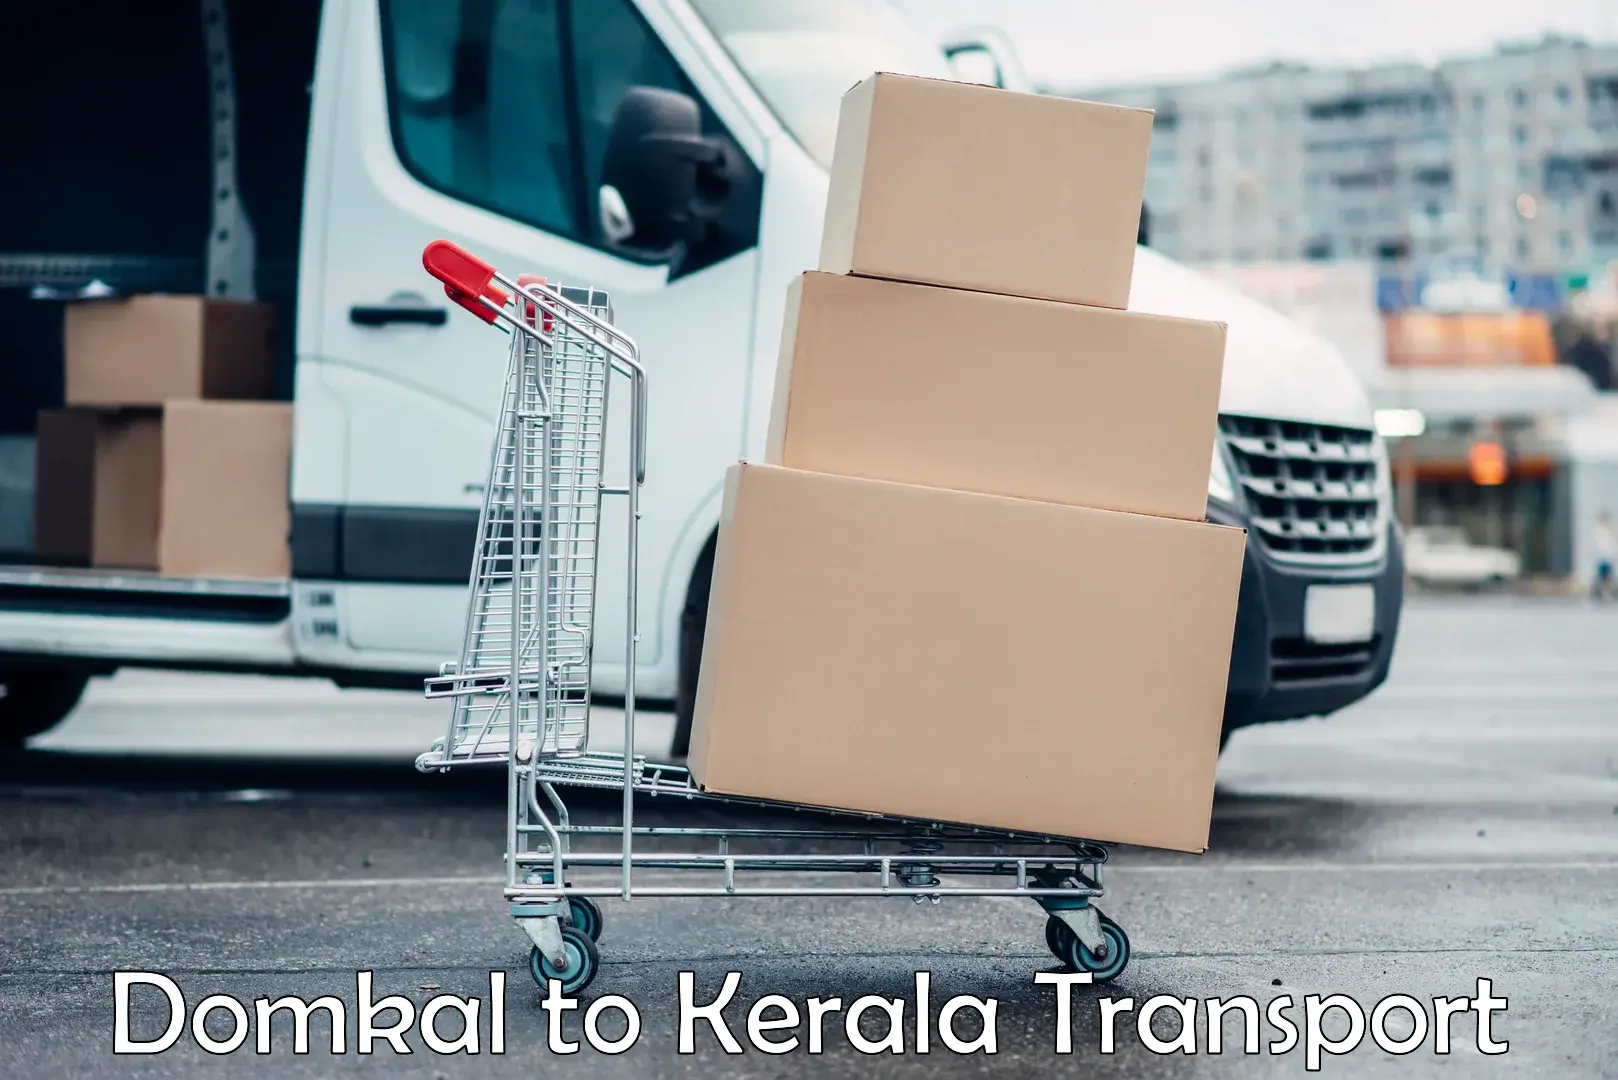 Pick up transport service Domkal to Kollam